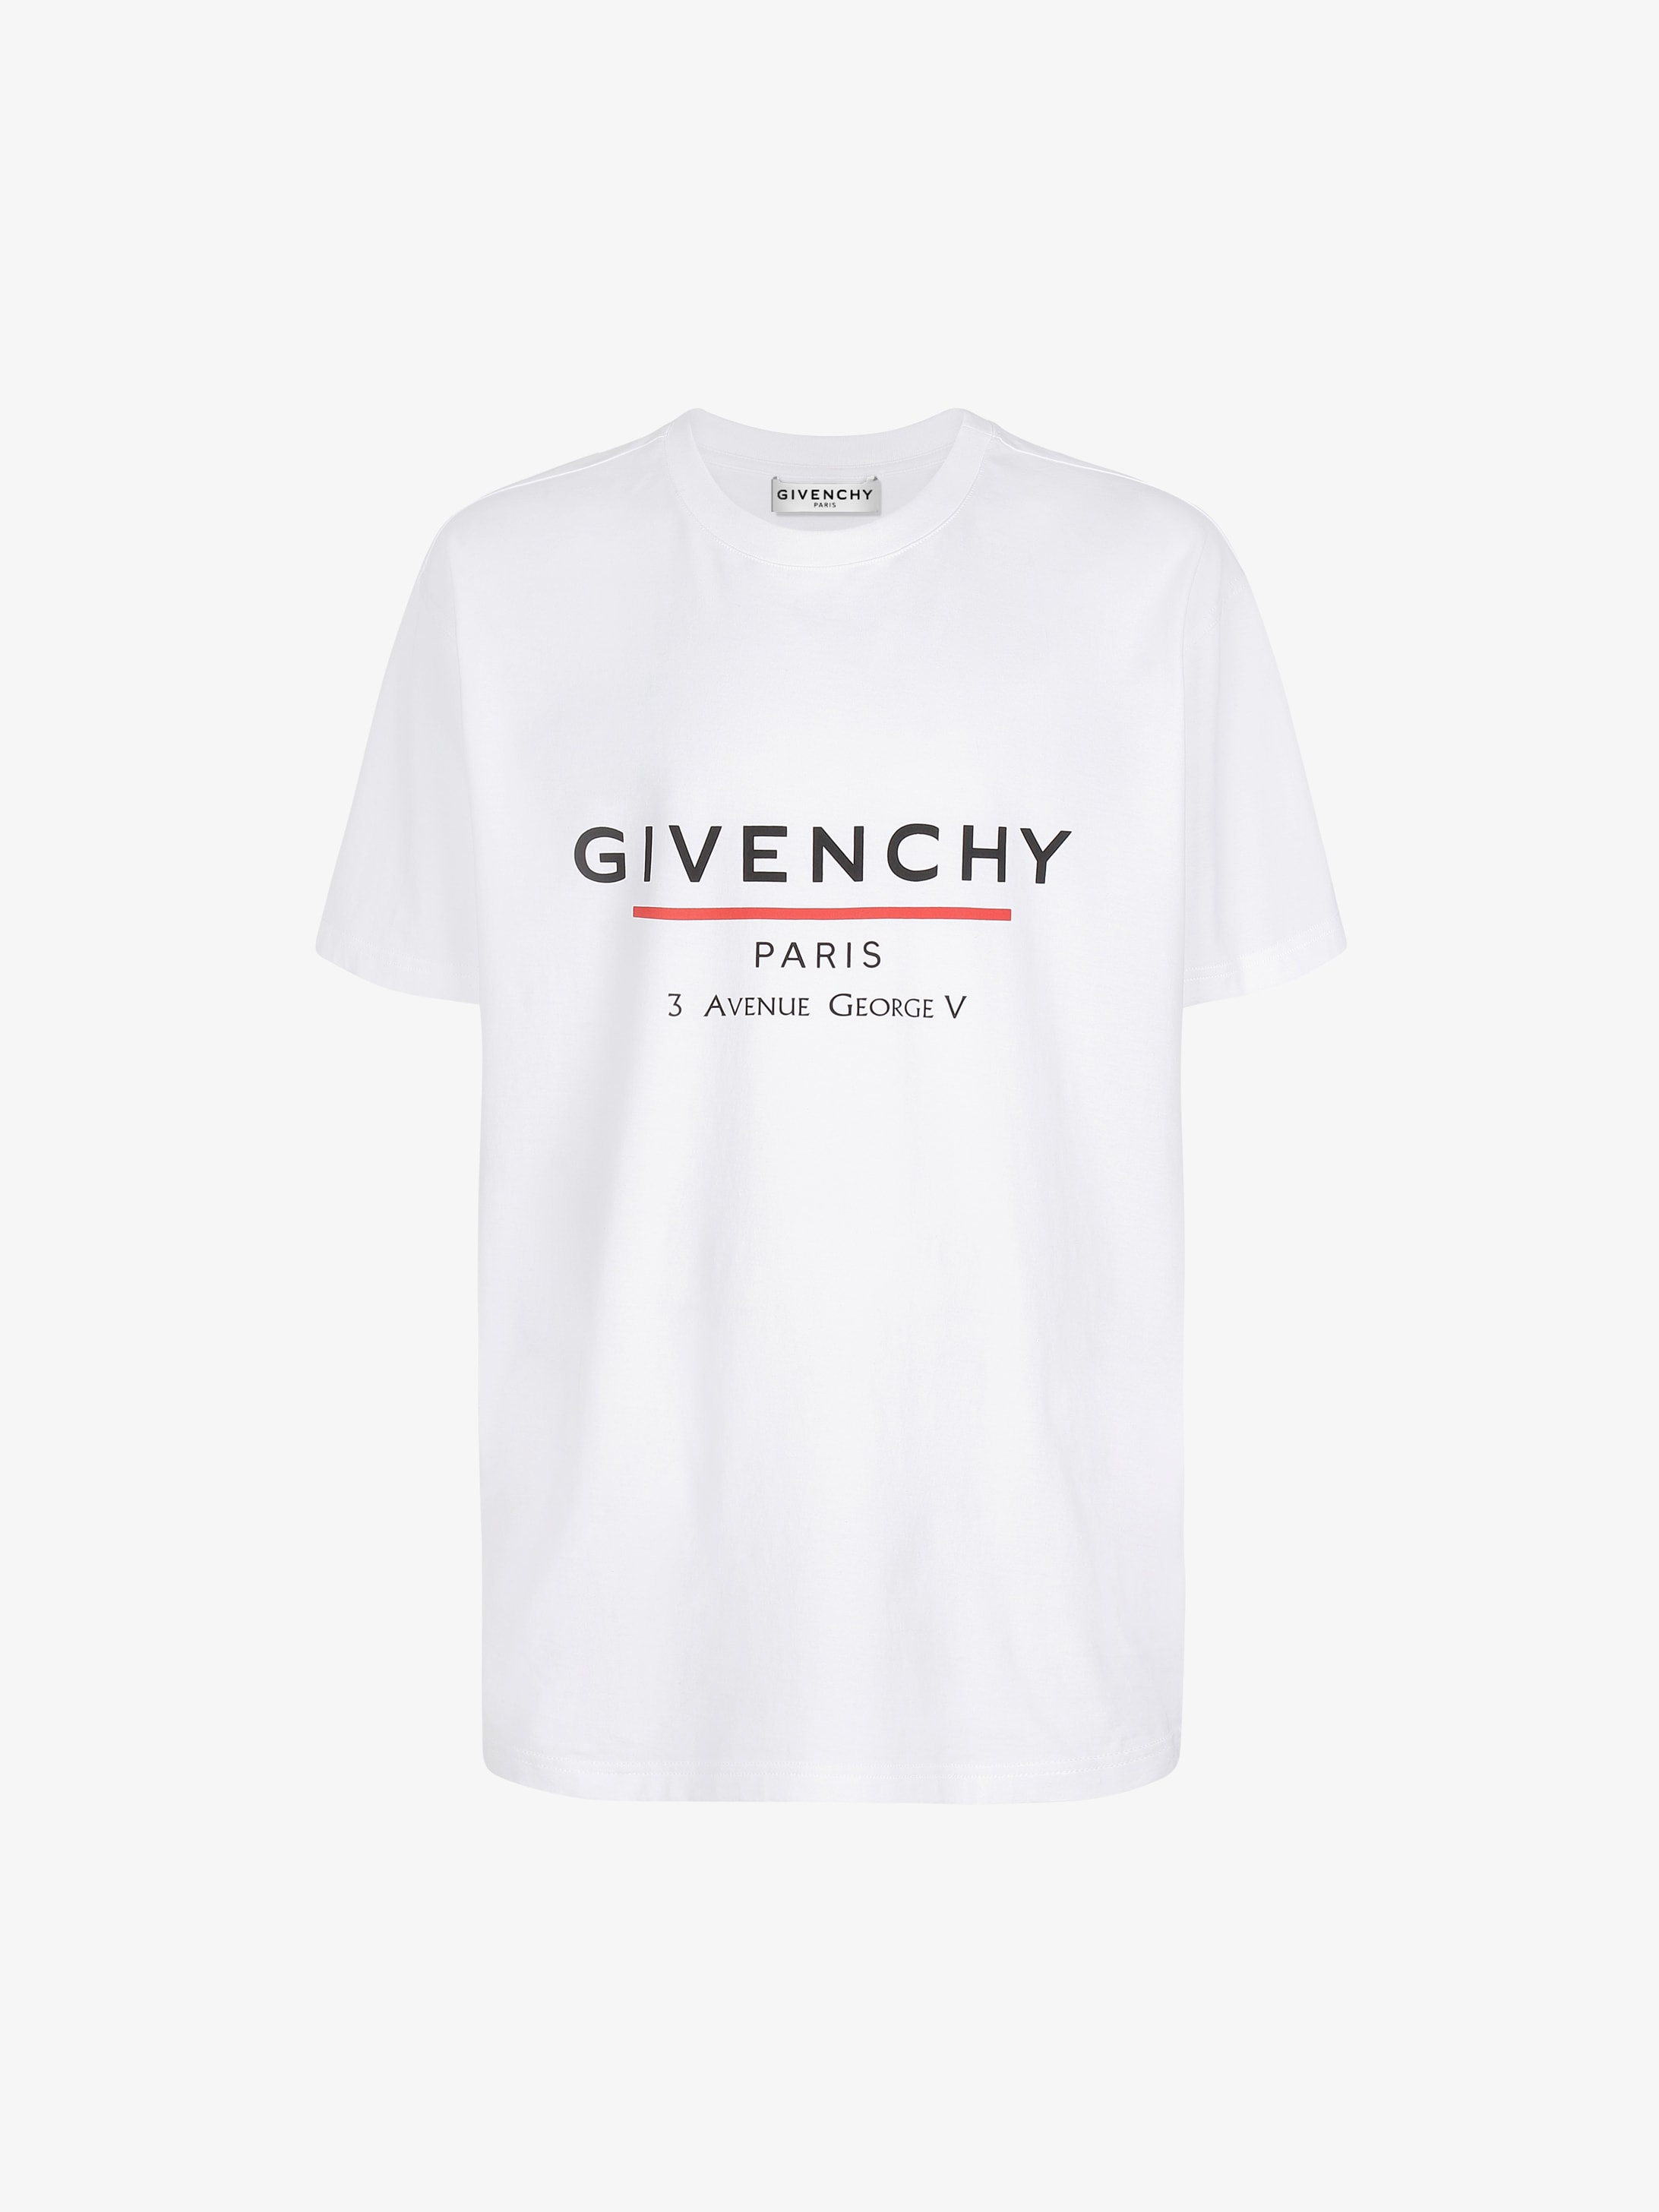 givenchy paris shirts